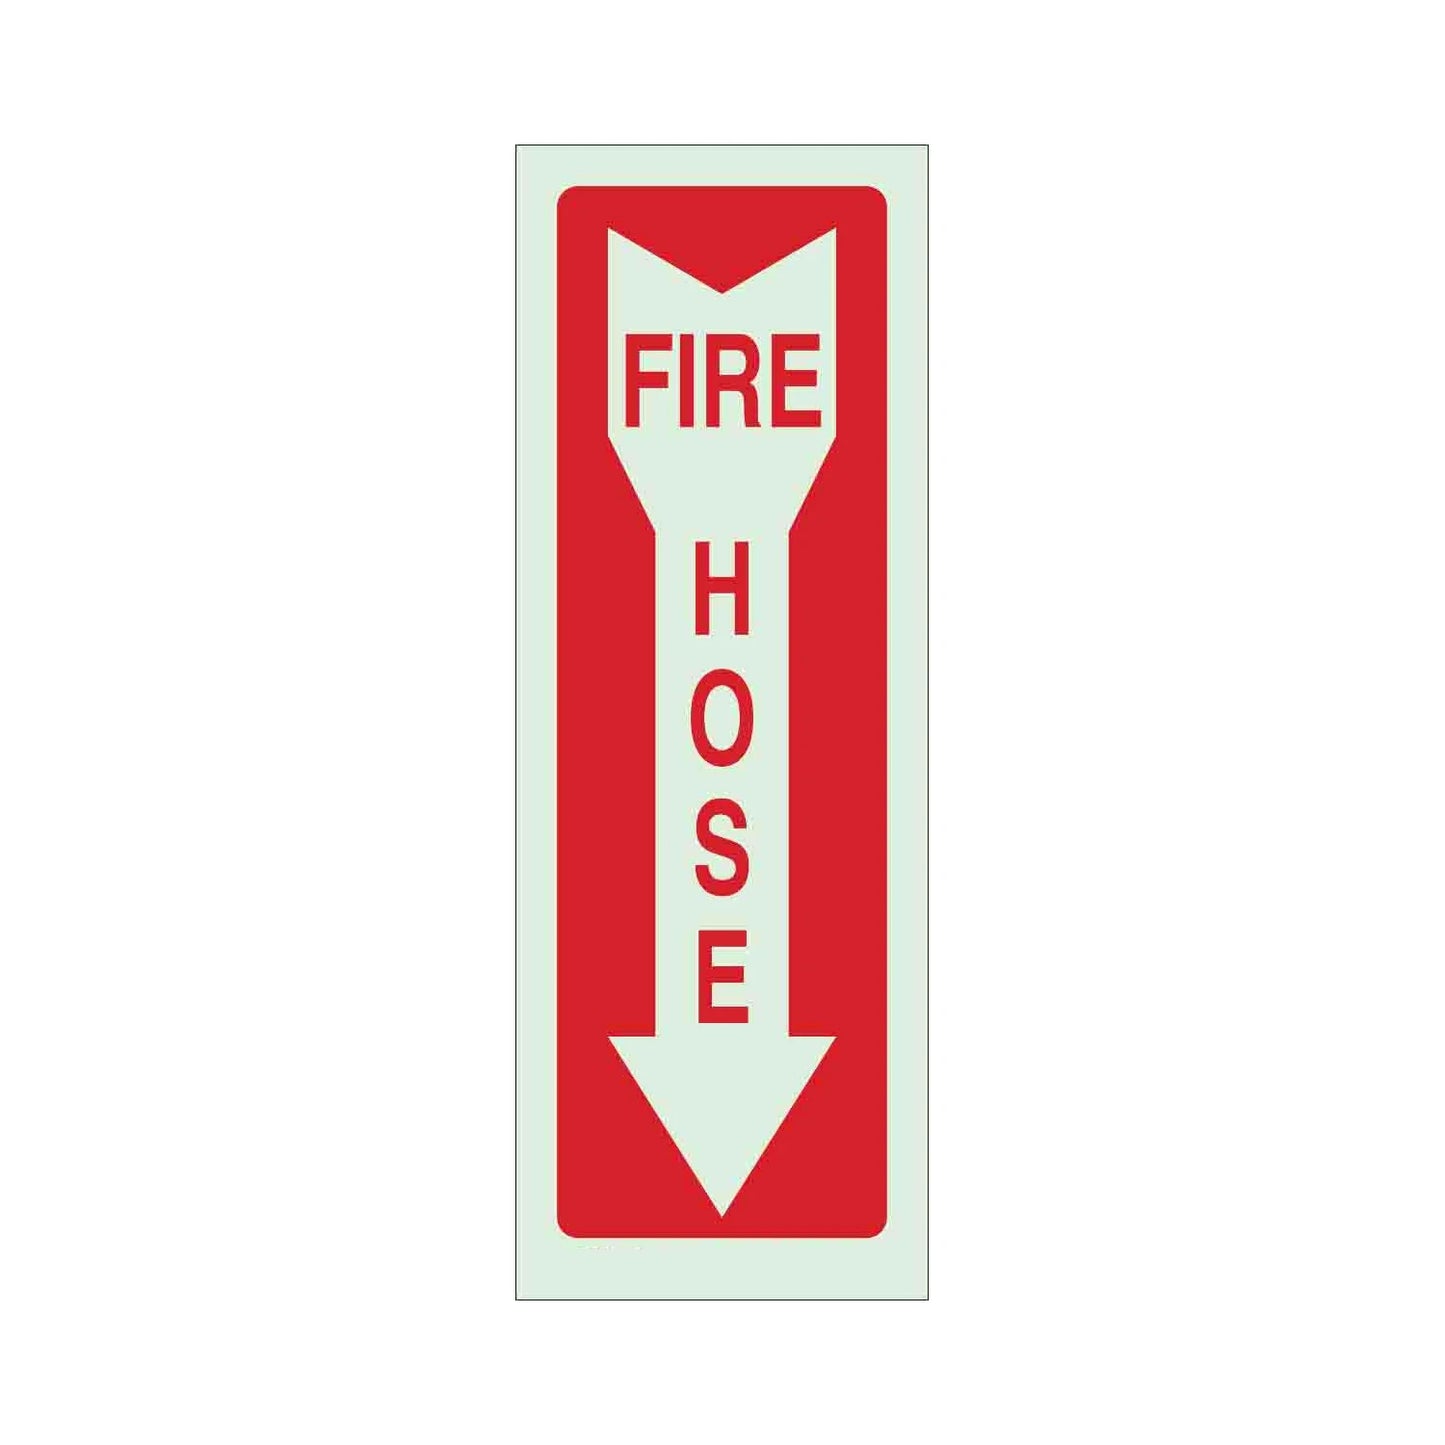 Fire Hose Sign 02